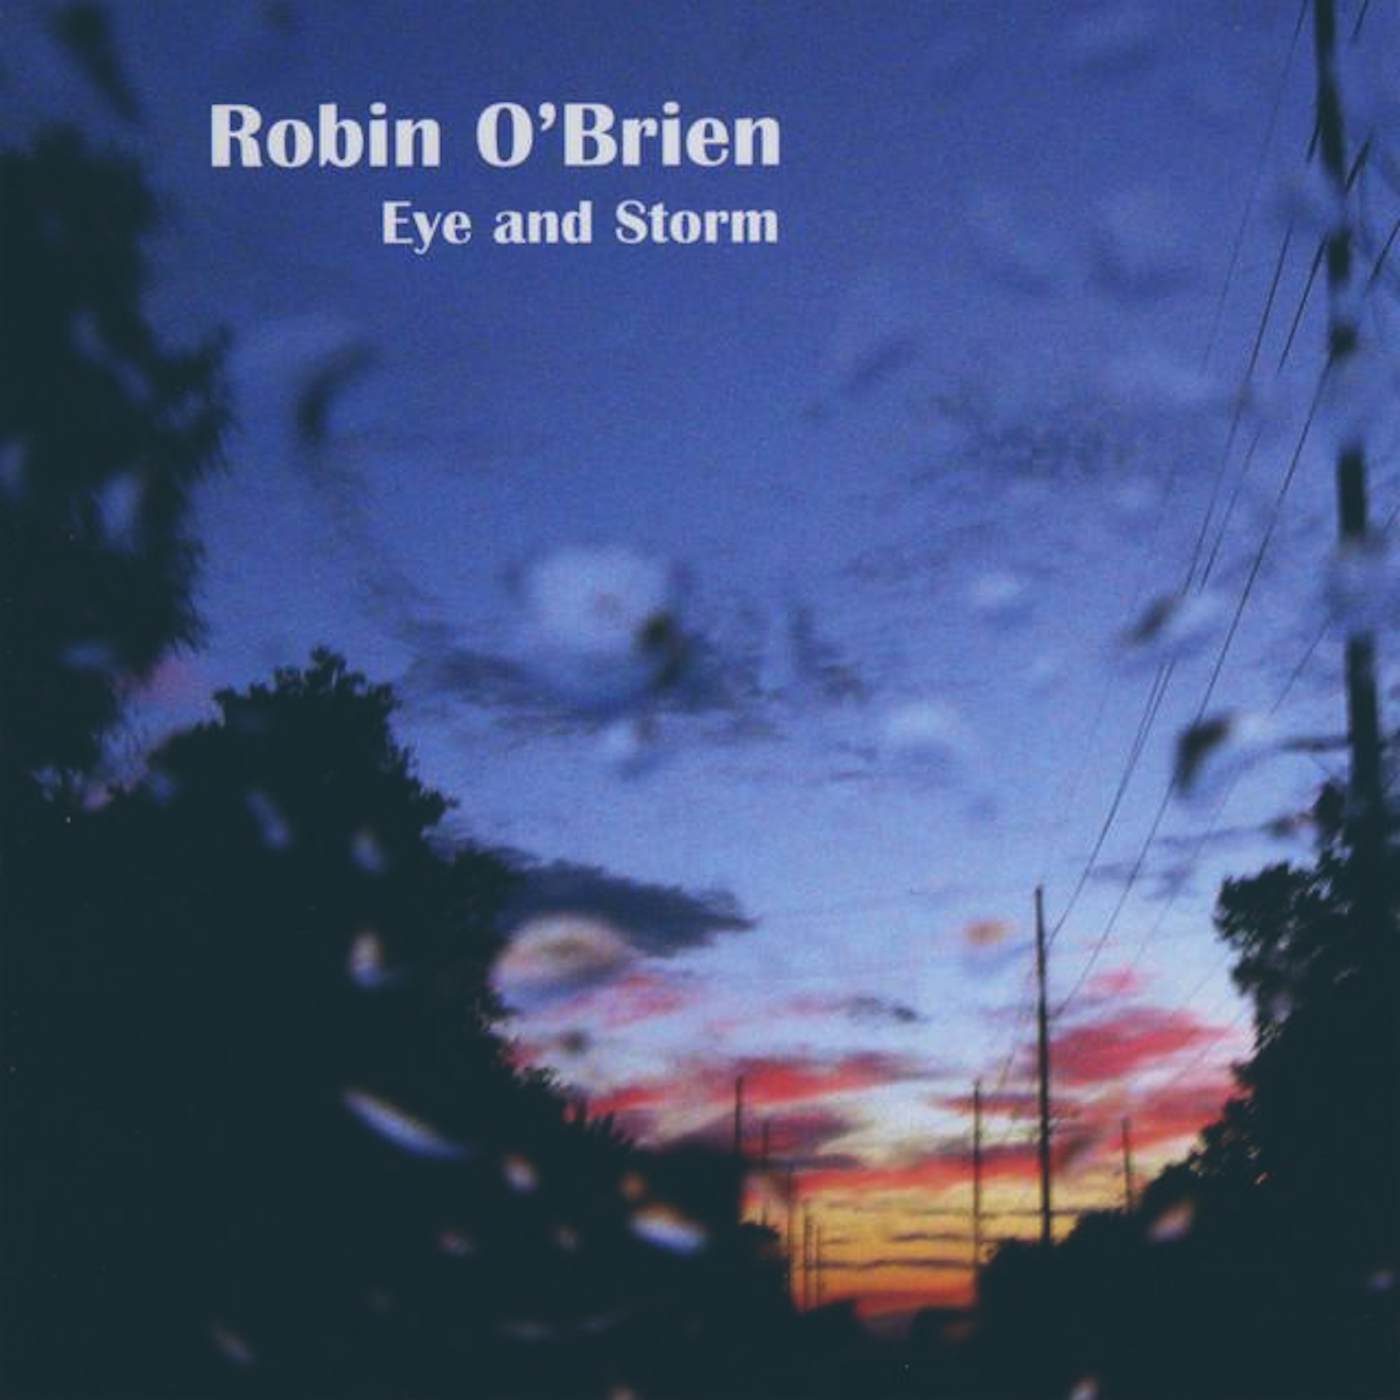 Robin O'Brien